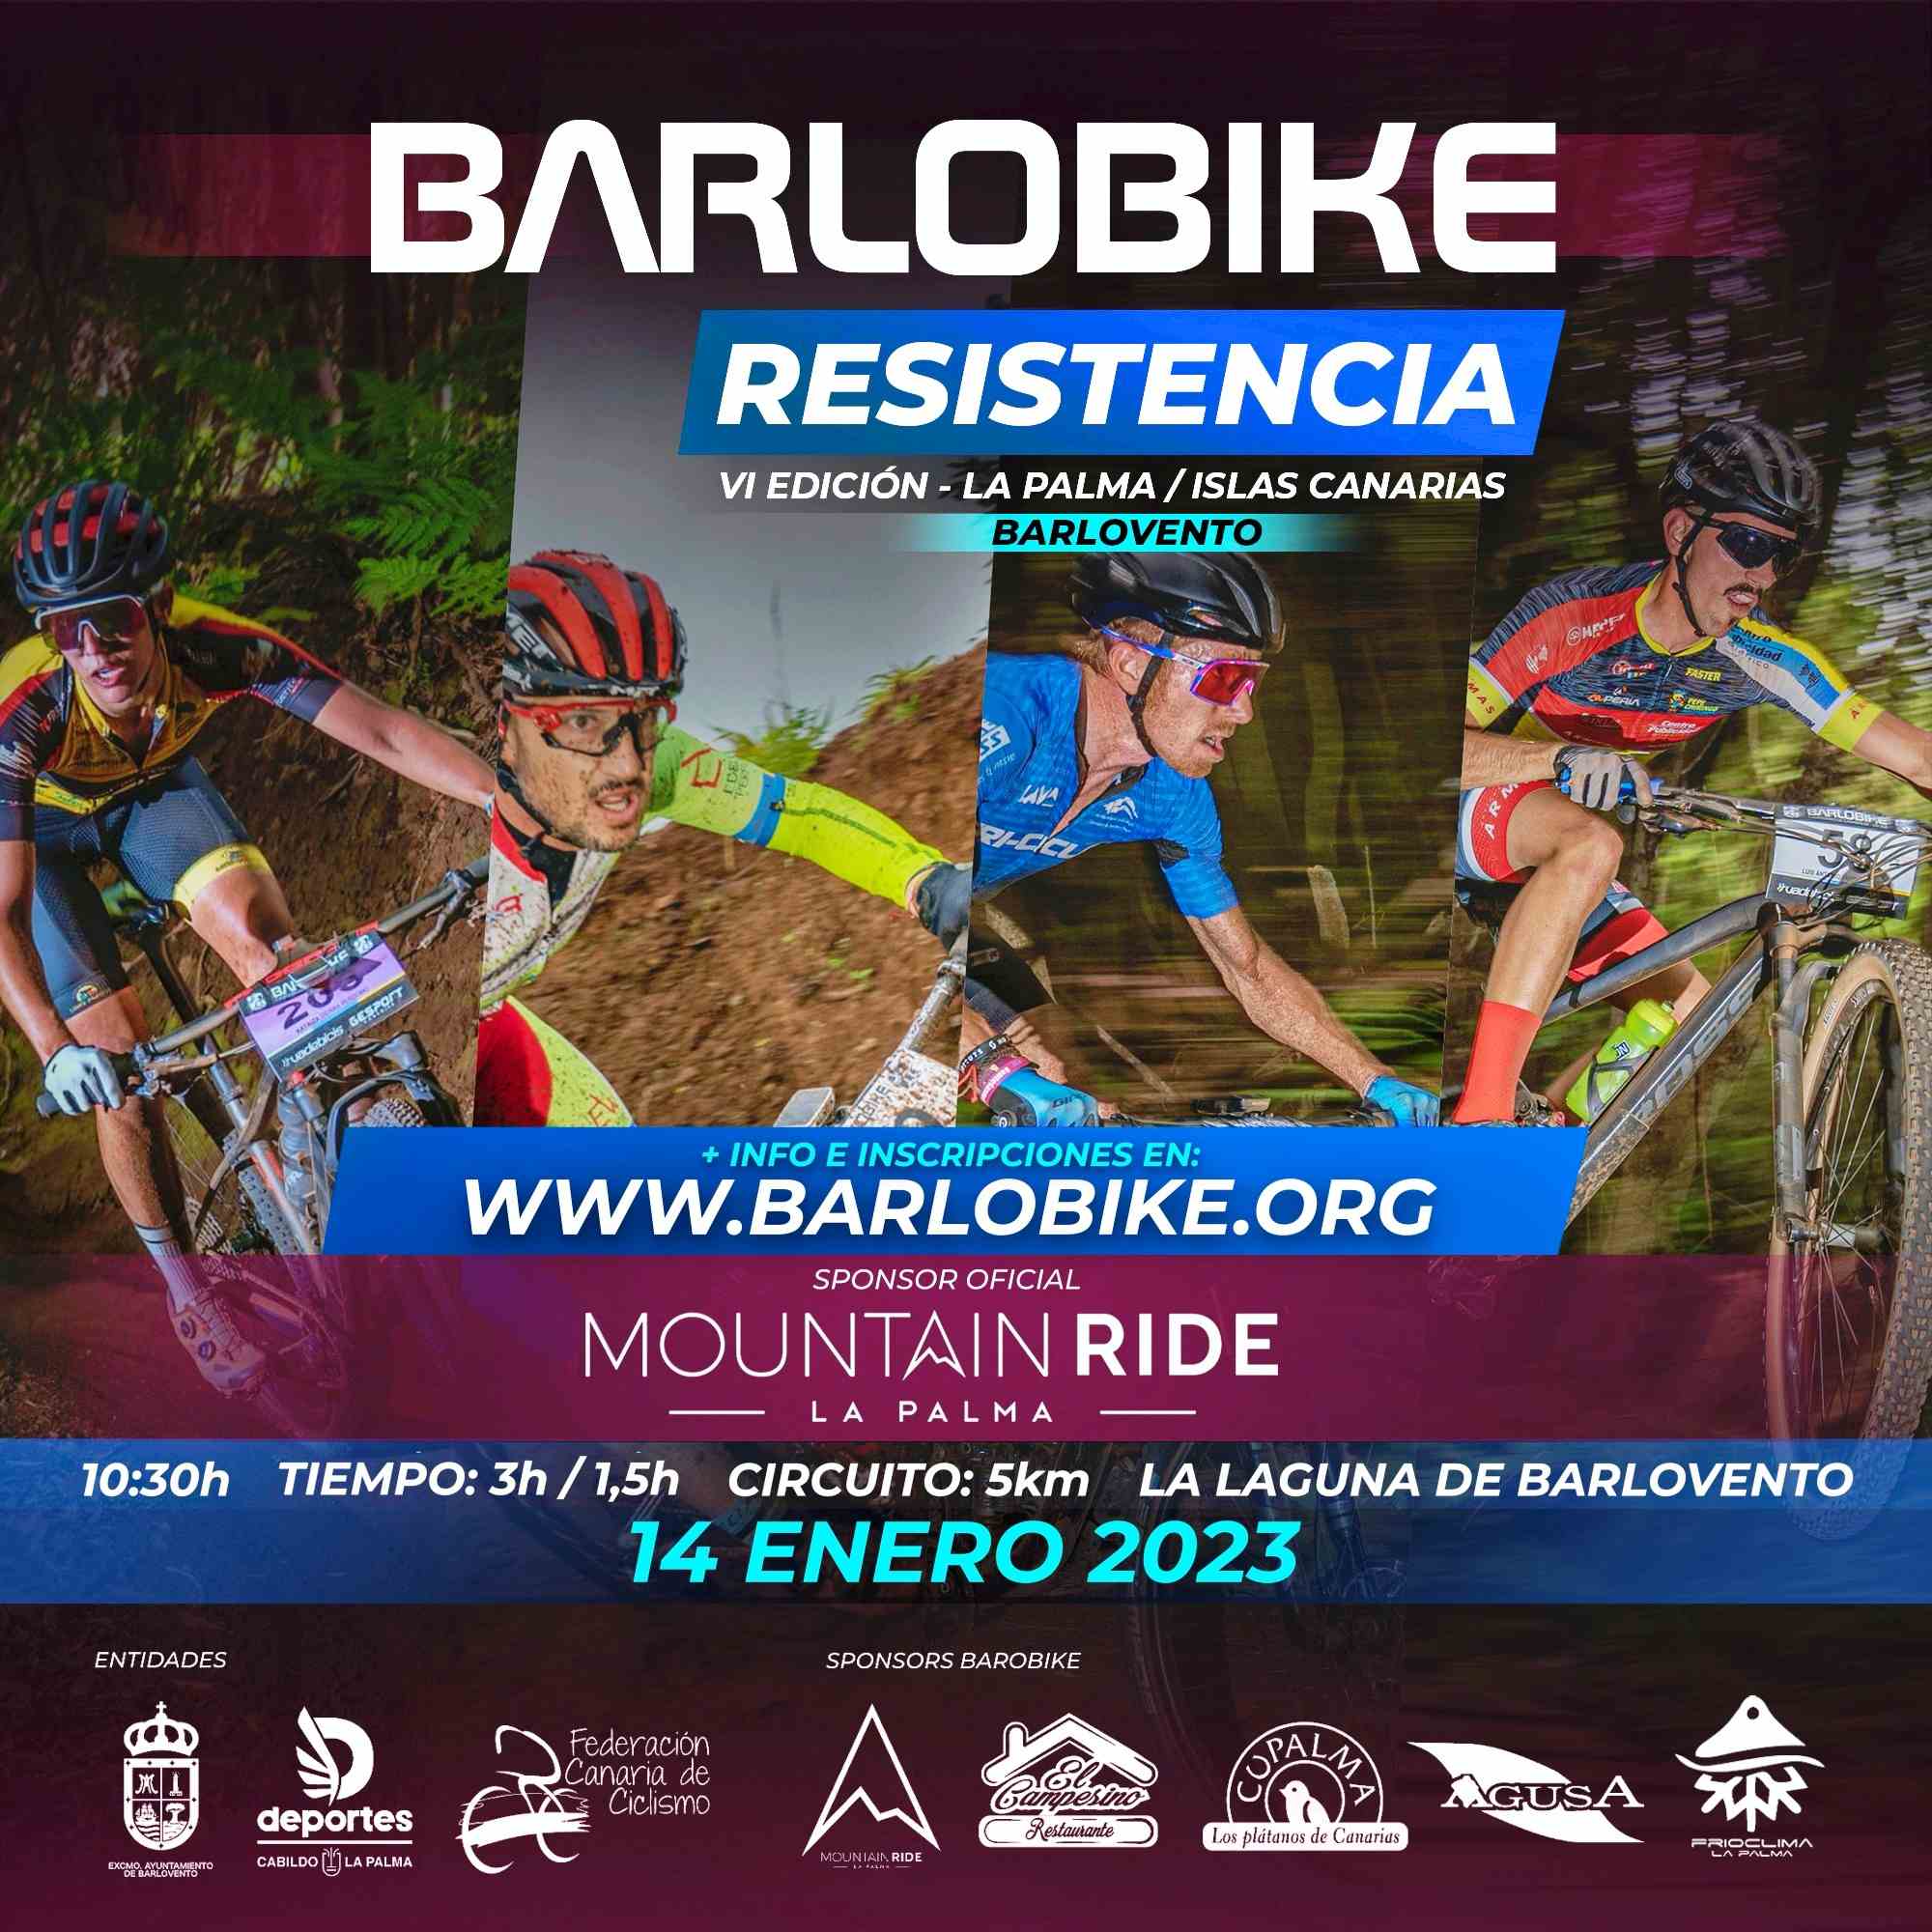 BARLOBIKE XC0 RESISTENCIA 2023 - Inscríbete